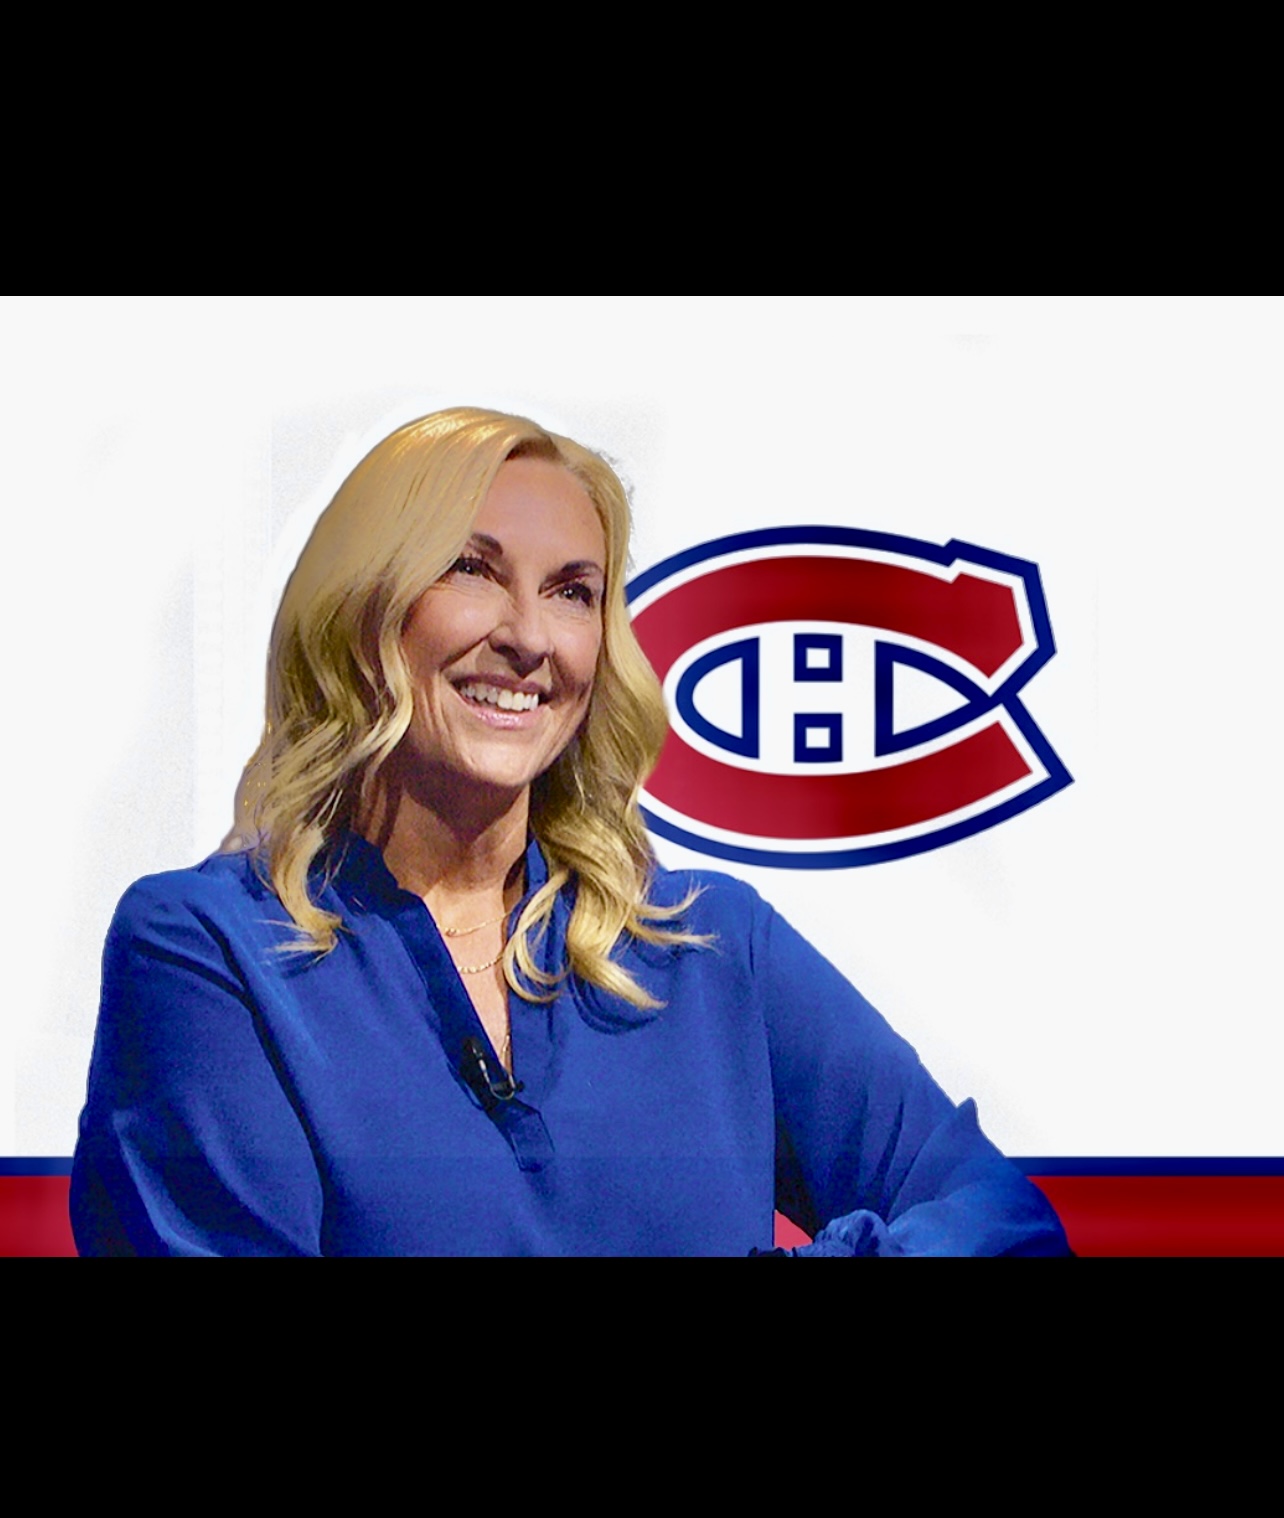 Une femme souriante devant un logo des Canadiens de Montréal, représentant fièrement Le Canadien.